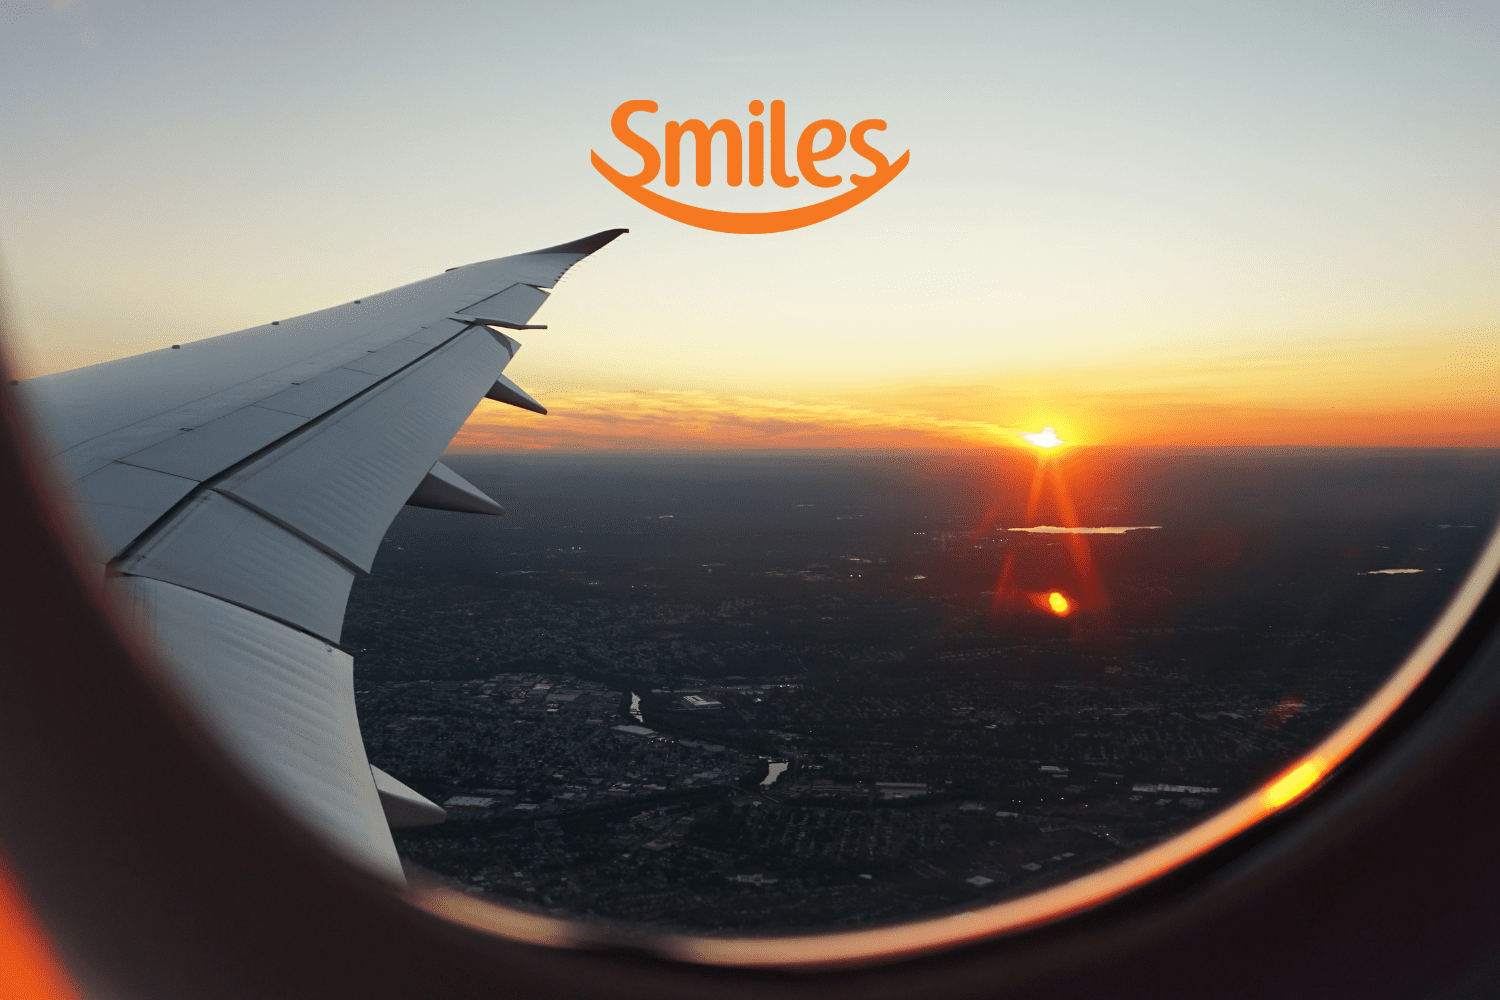 avião no ar com logo Smiles Bônus Smiles